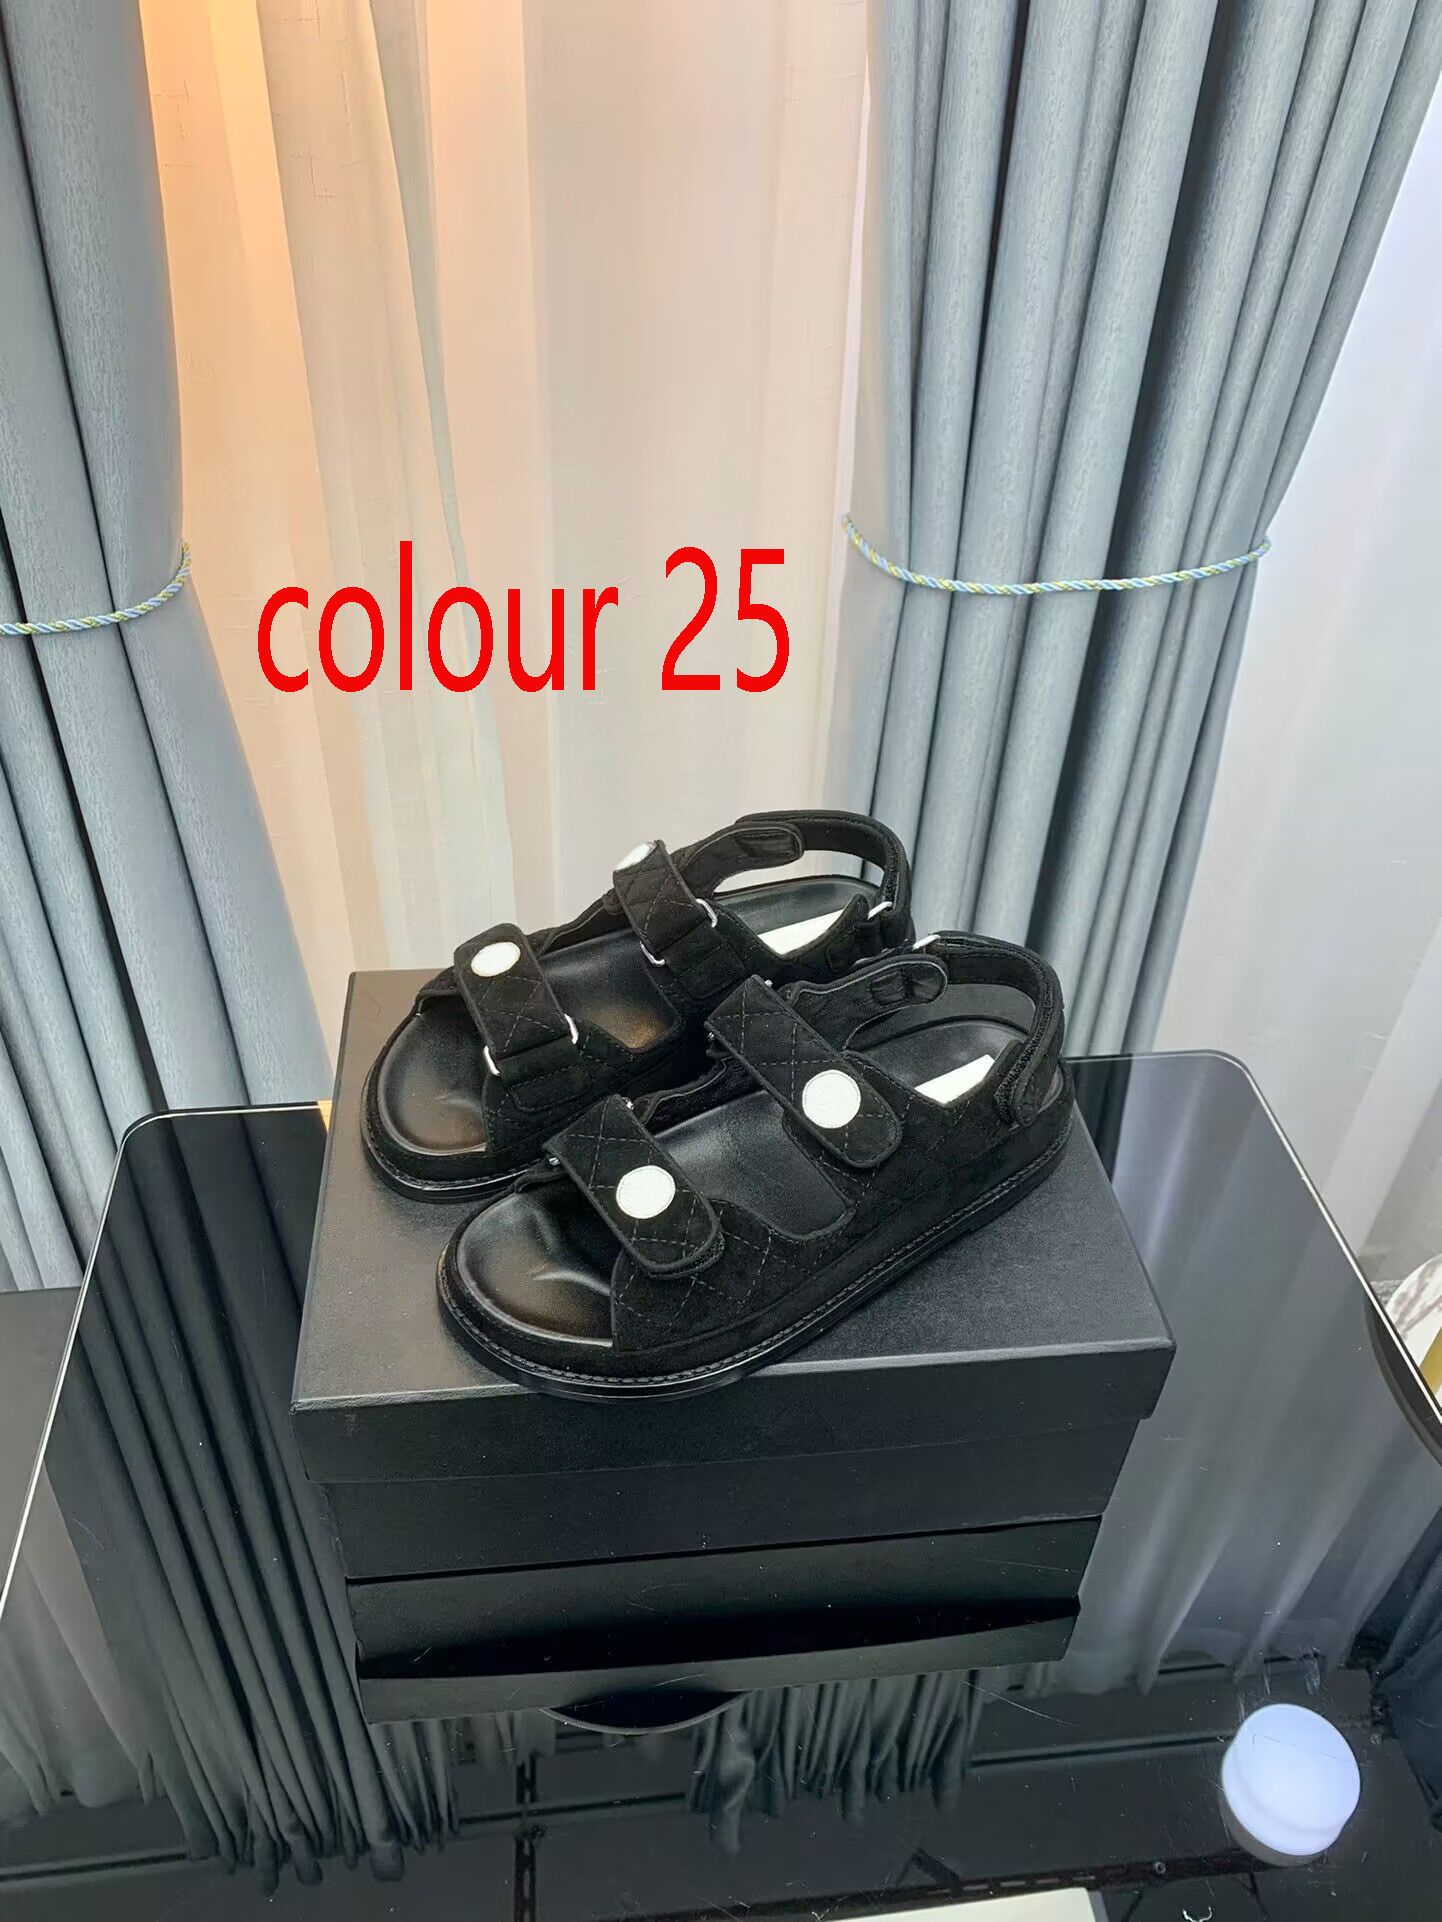 Colour 25